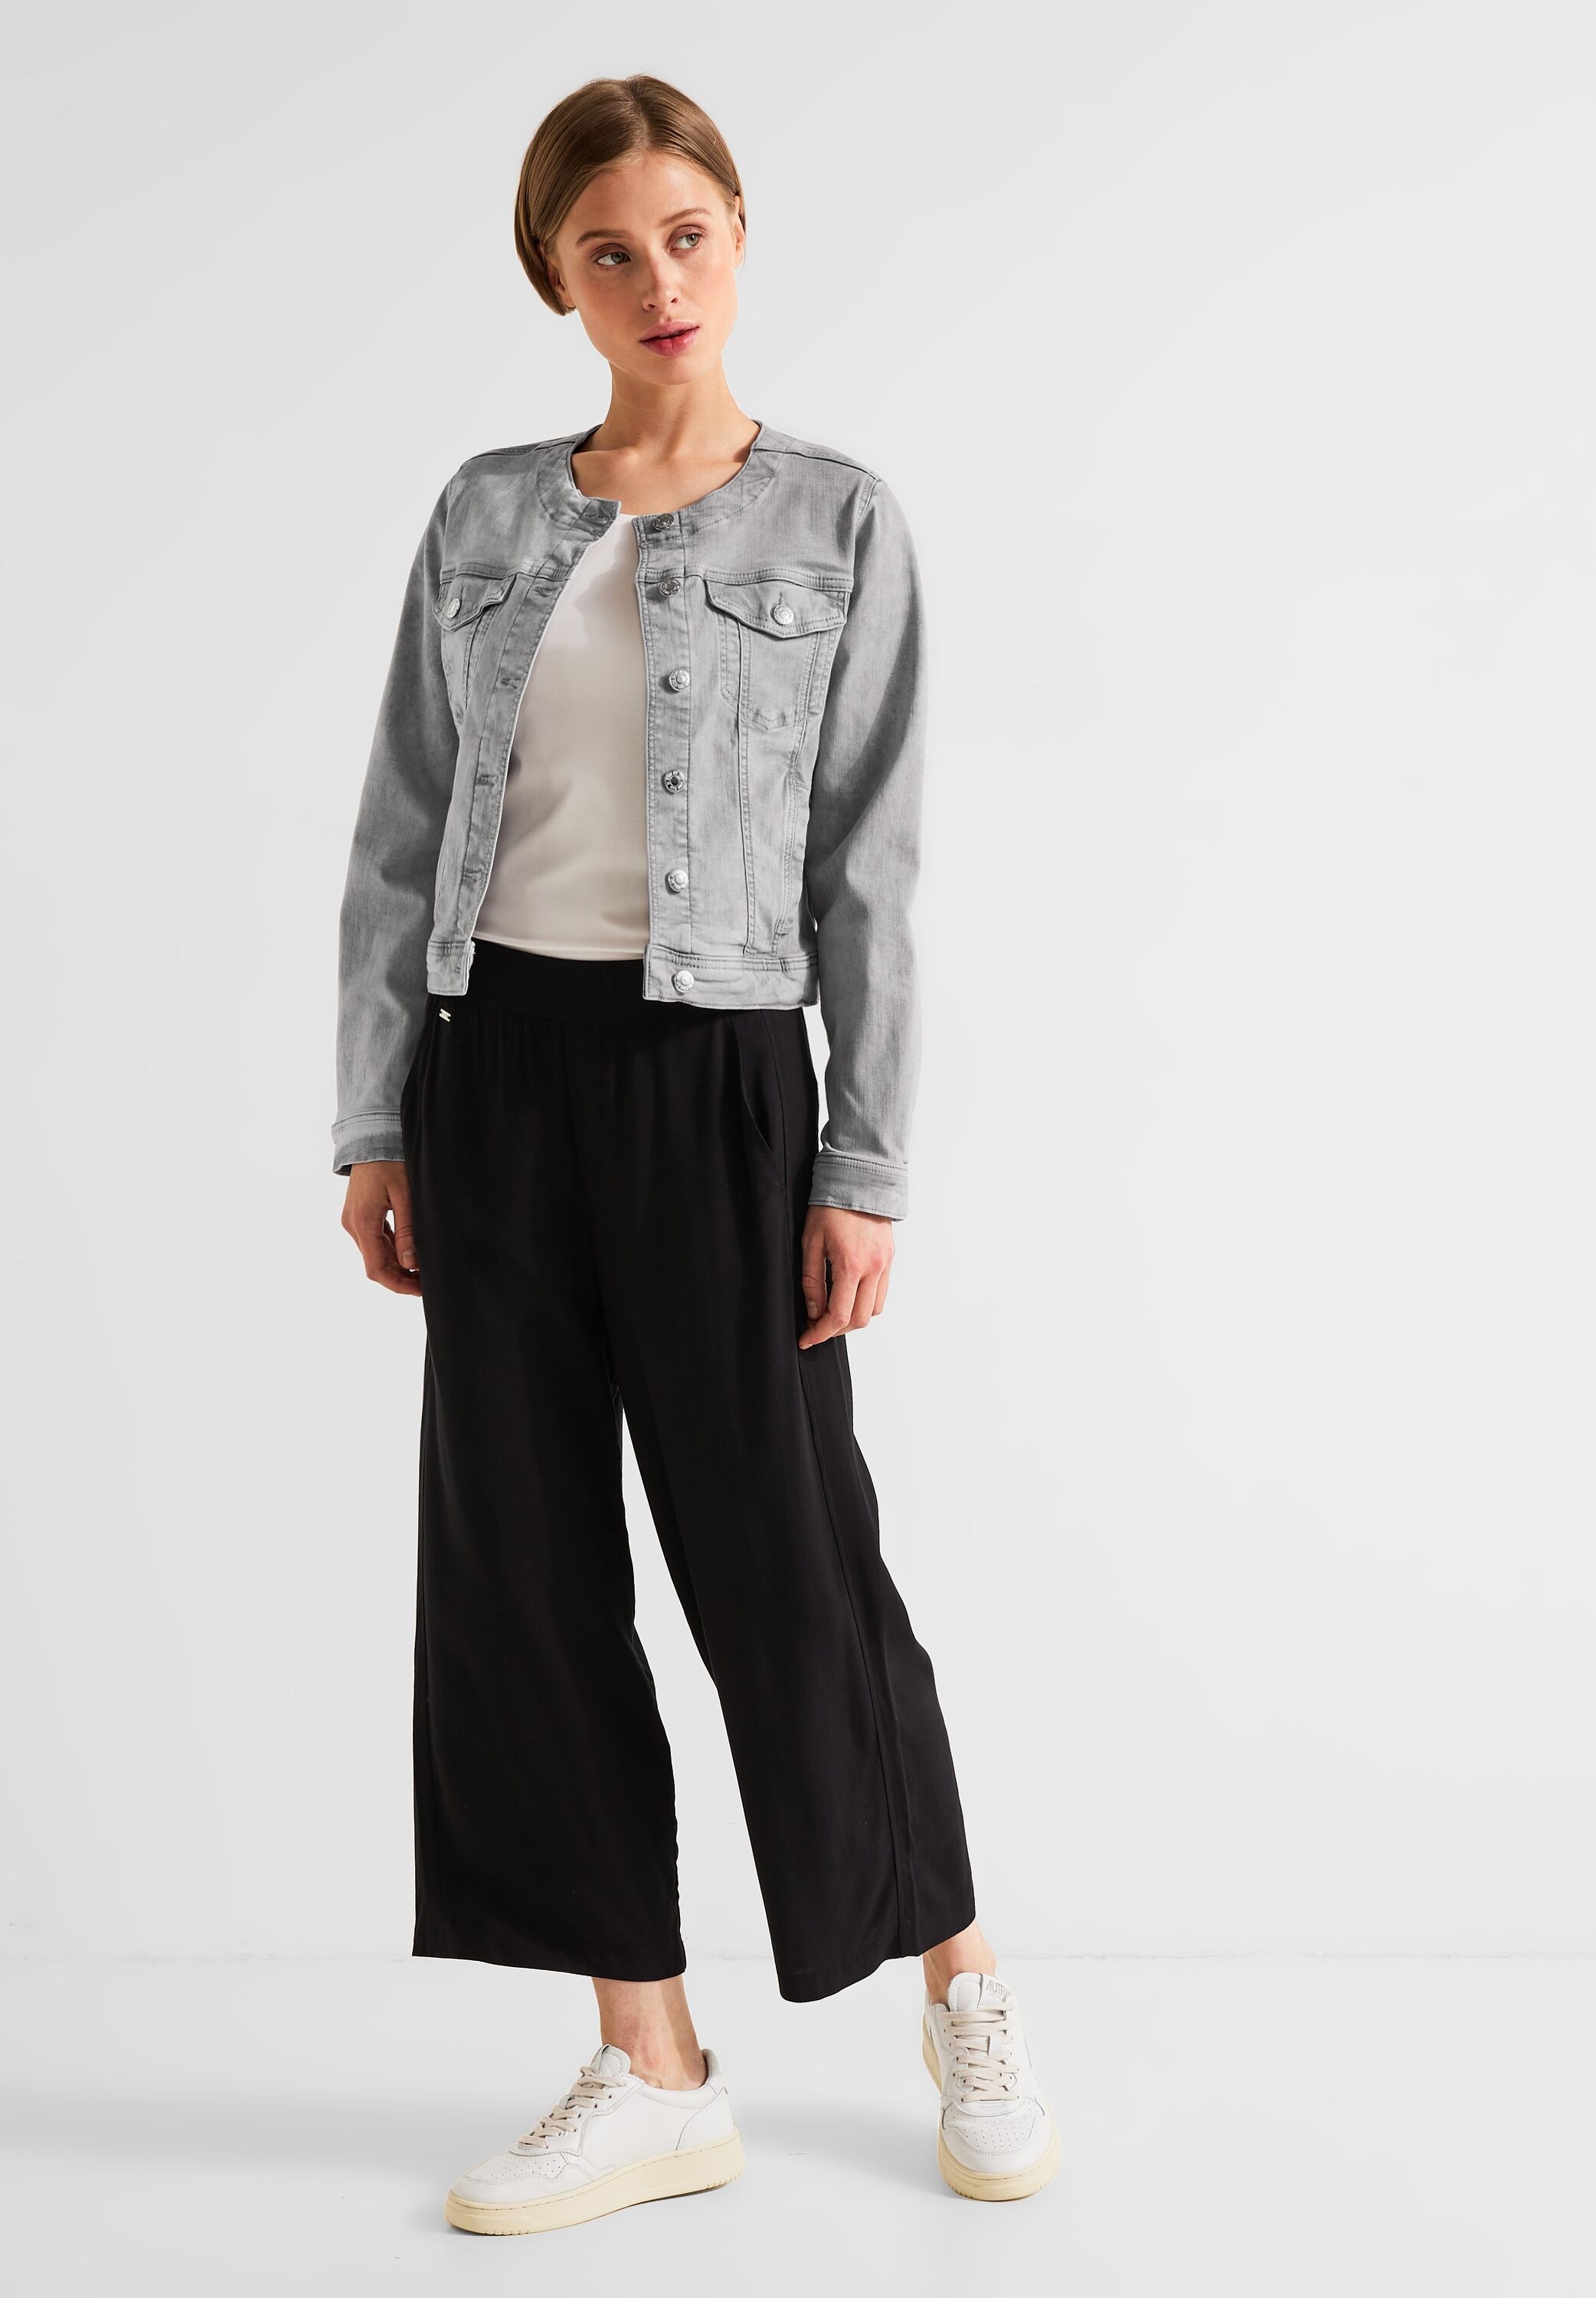 Materialmix Jeansjacke, STREET softem ohne aus Kapuze, ONE kaufen